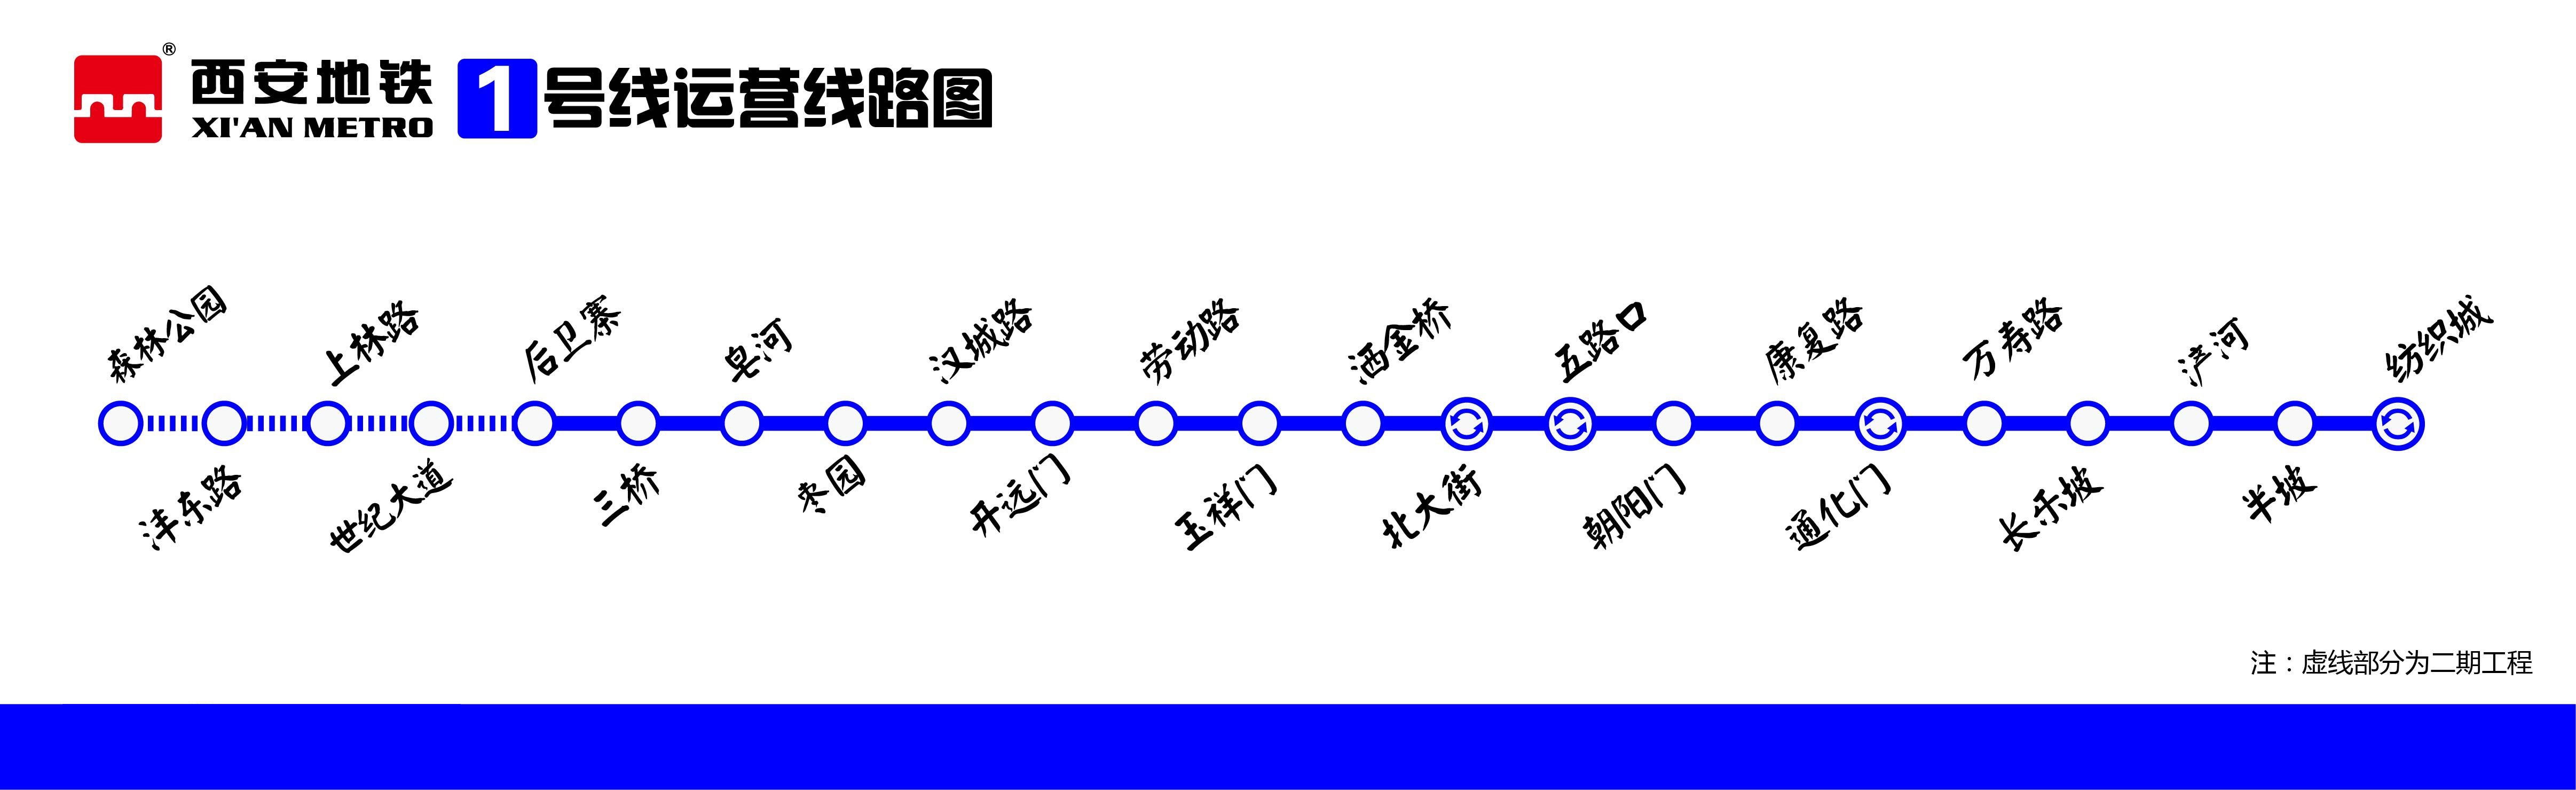 西安捷運1號線運營線路圖